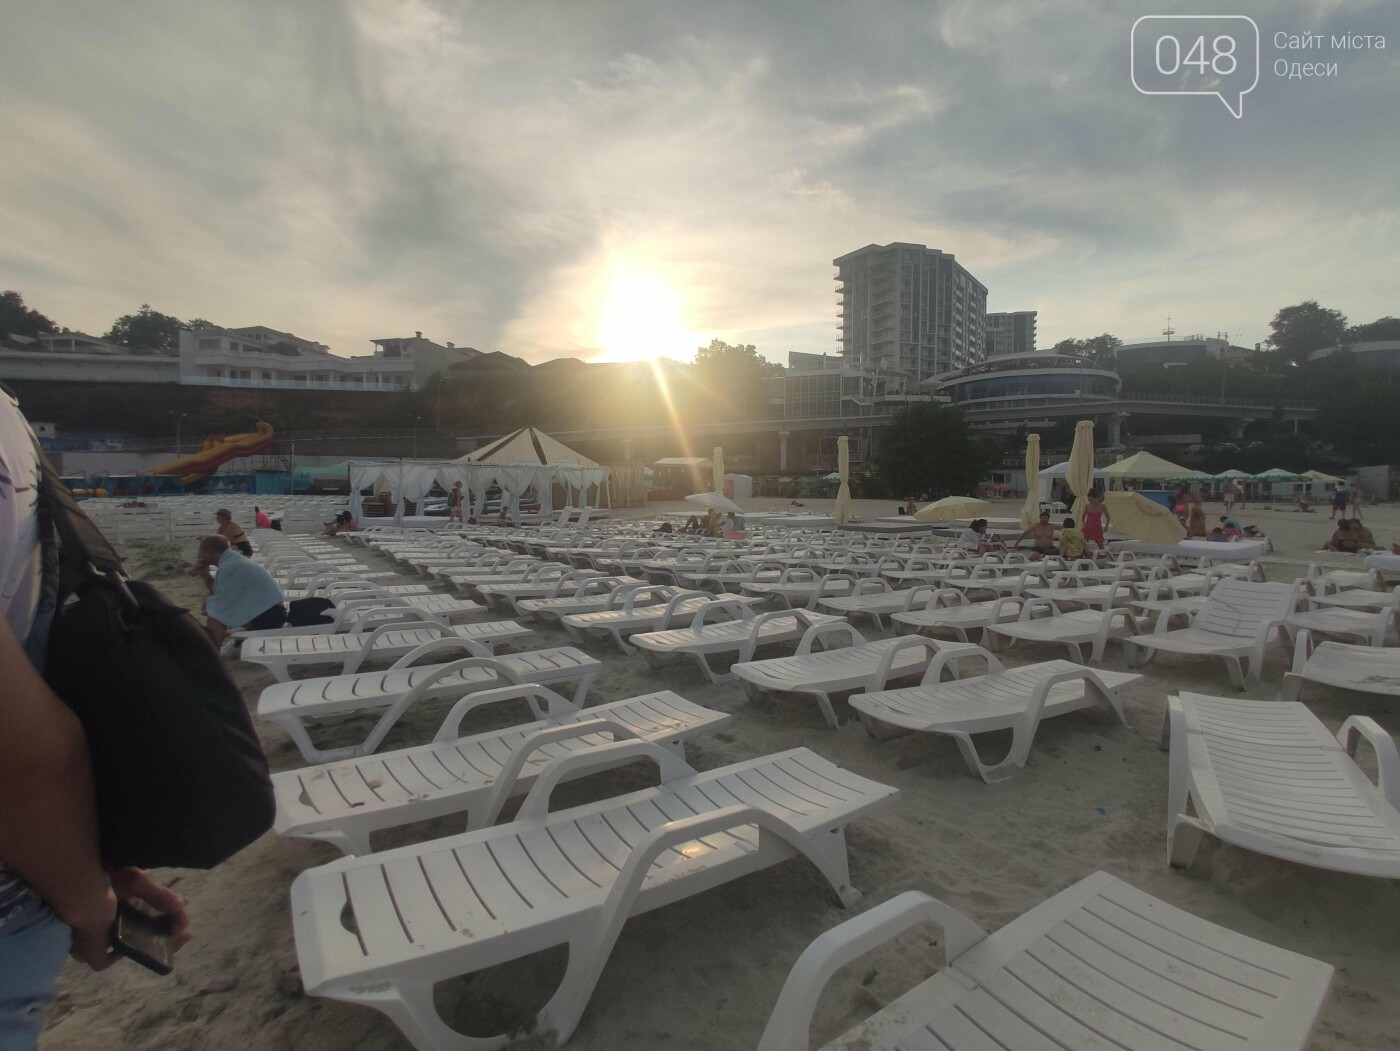 Плюсы и минусы: стоит ли отдыхать на пляже "Чайка" в Одессе, - ФОТО, фото-10